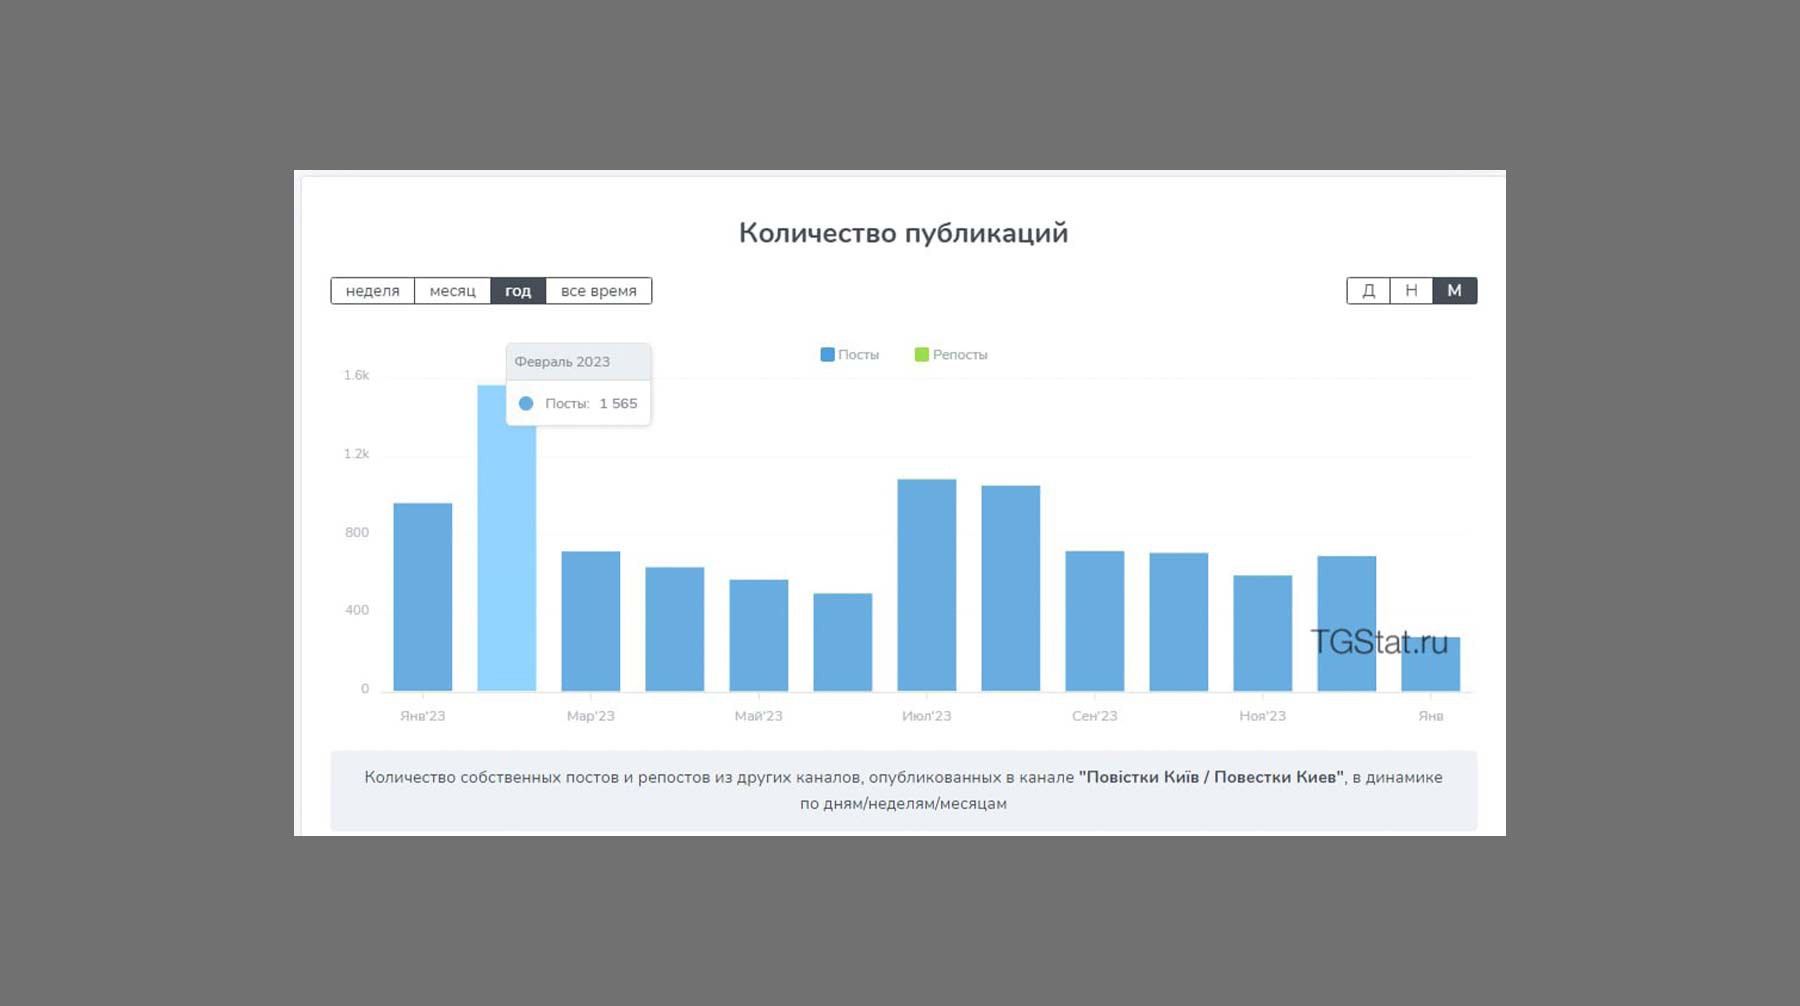 Количество публикаций в Киевском канале по месяцам